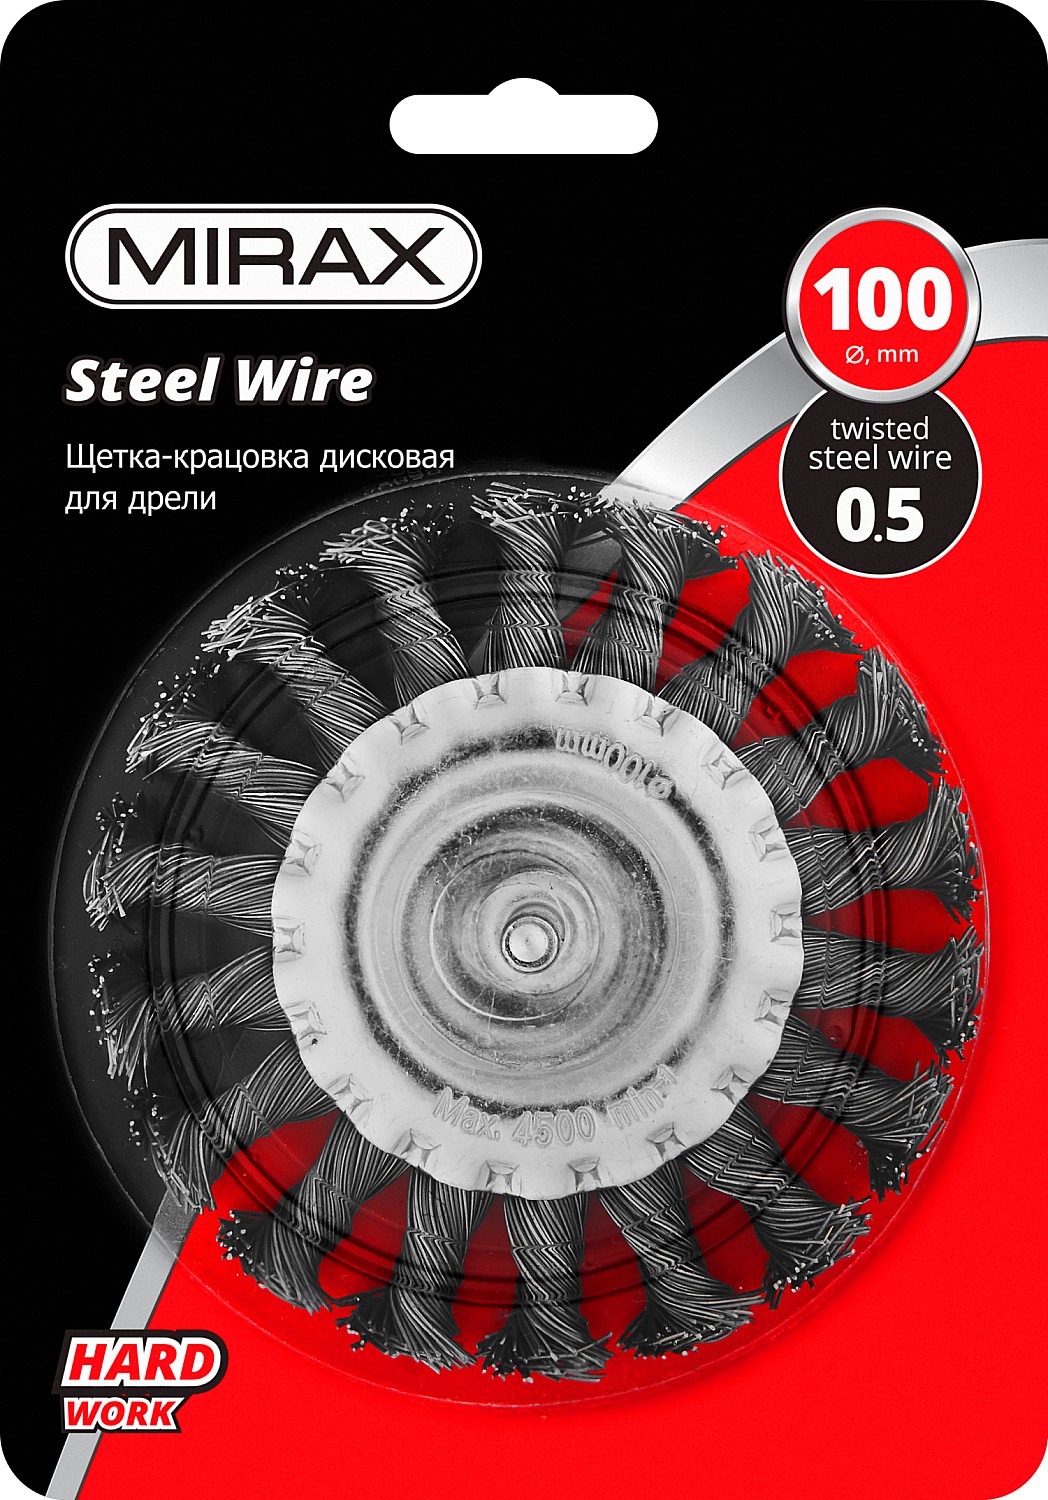 MIRAX 100 / 6 мм, жгутированная стальная проволока 0.5 мм, щетка дисковая для дрели (35146-100)